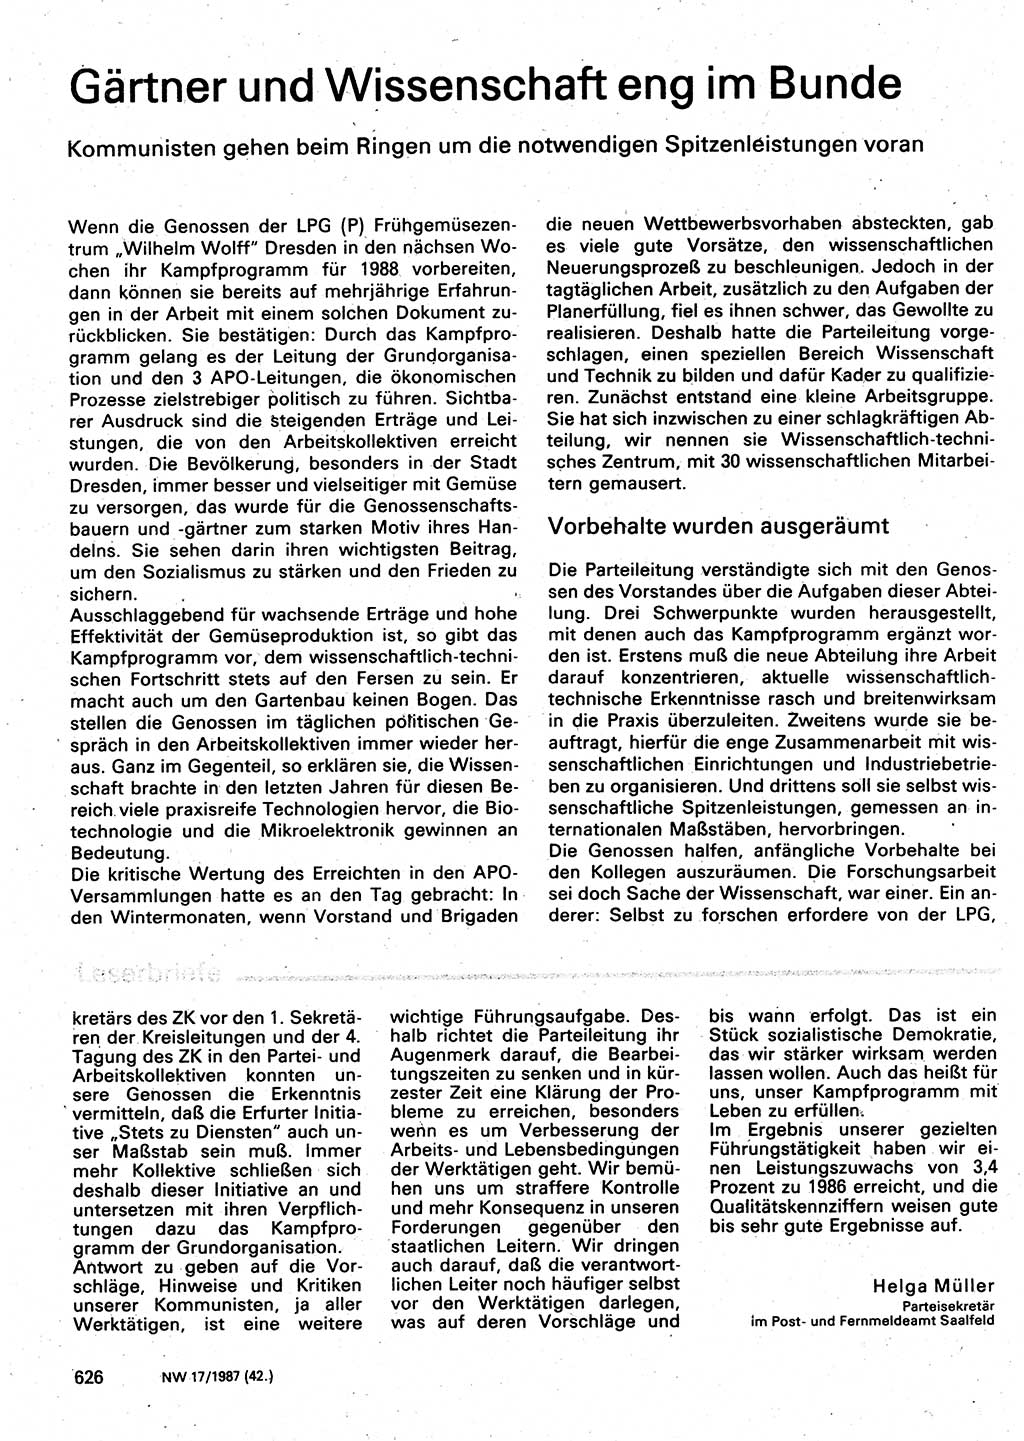 Neuer Weg (NW), Organ des Zentralkomitees (ZK) der SED (Sozialistische Einheitspartei Deutschlands) für Fragen des Parteilebens, 42. Jahrgang [Deutsche Demokratische Republik (DDR)] 1987, Seite 626 (NW ZK SED DDR 1987, S. 626)